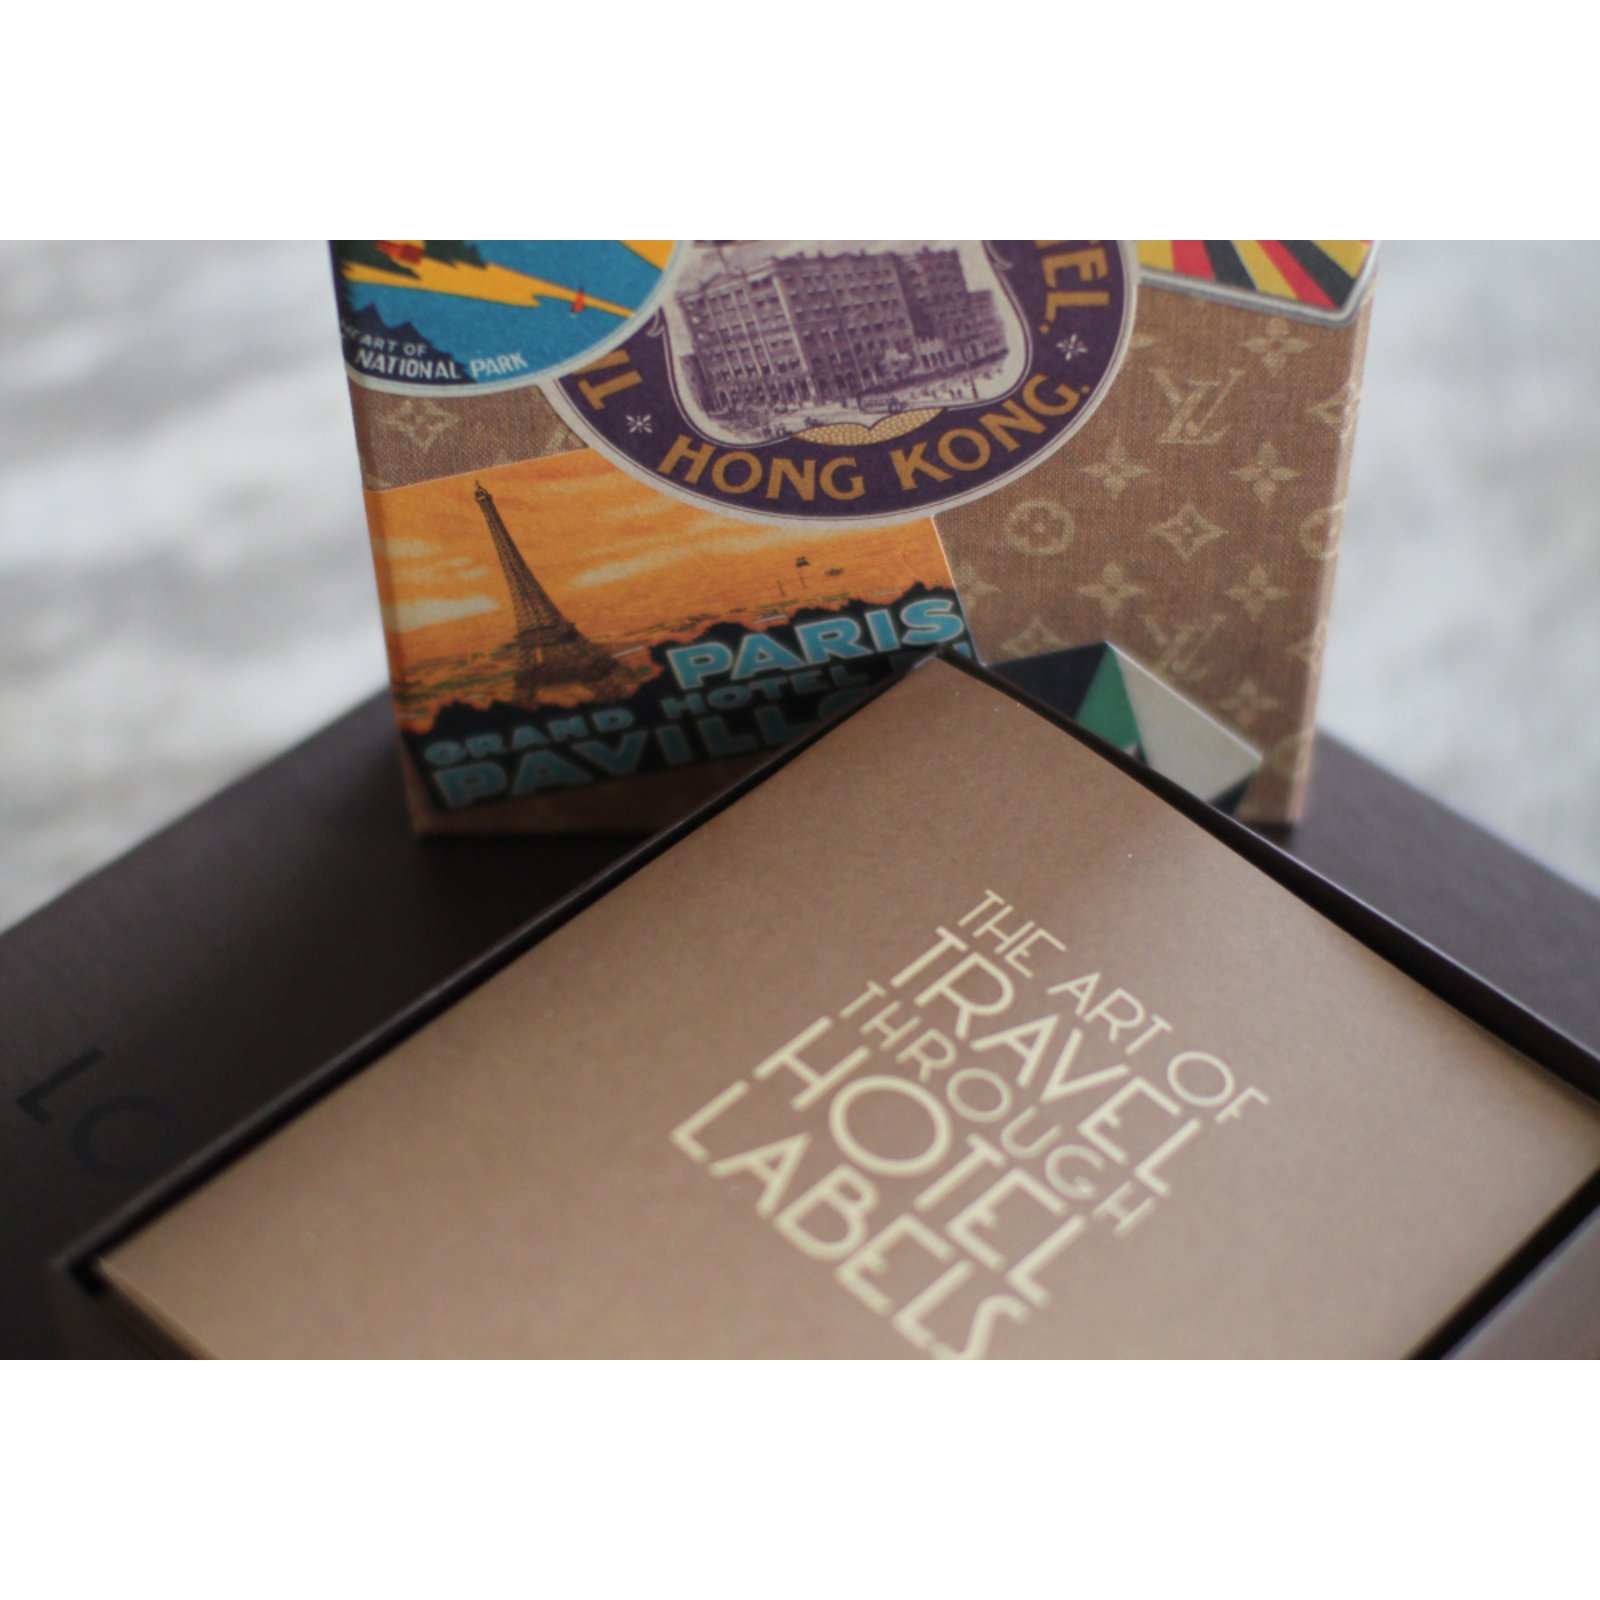 Louis Vuitton R07945 OCEAN LINERS LABELS POSTCARD BOX - The Attic Place